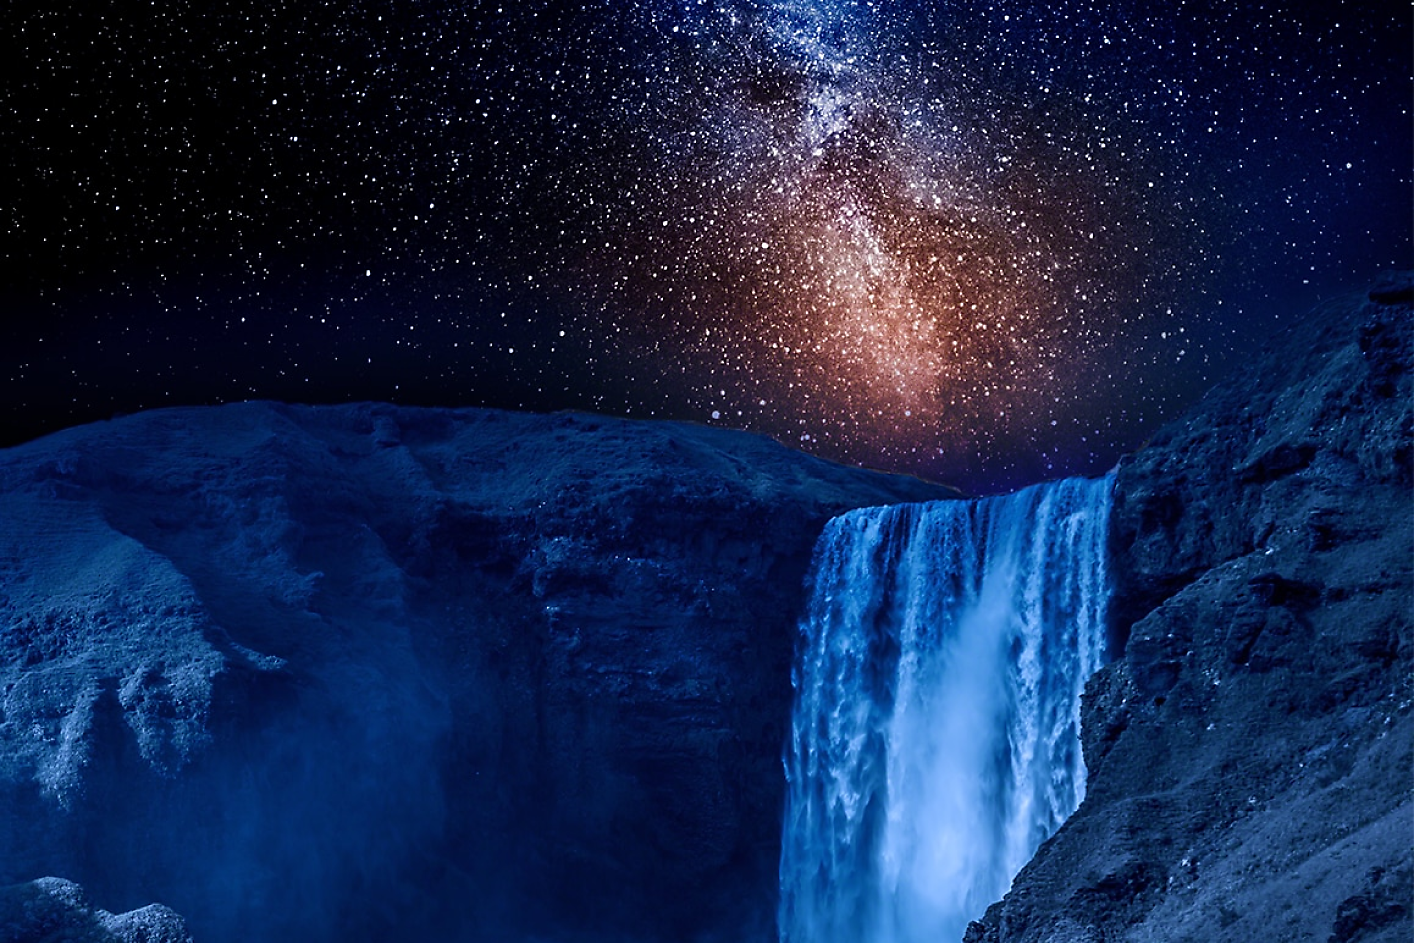 Et mørkeblåt vandfald med en stjernefyldt nattehimmel i baggrunden